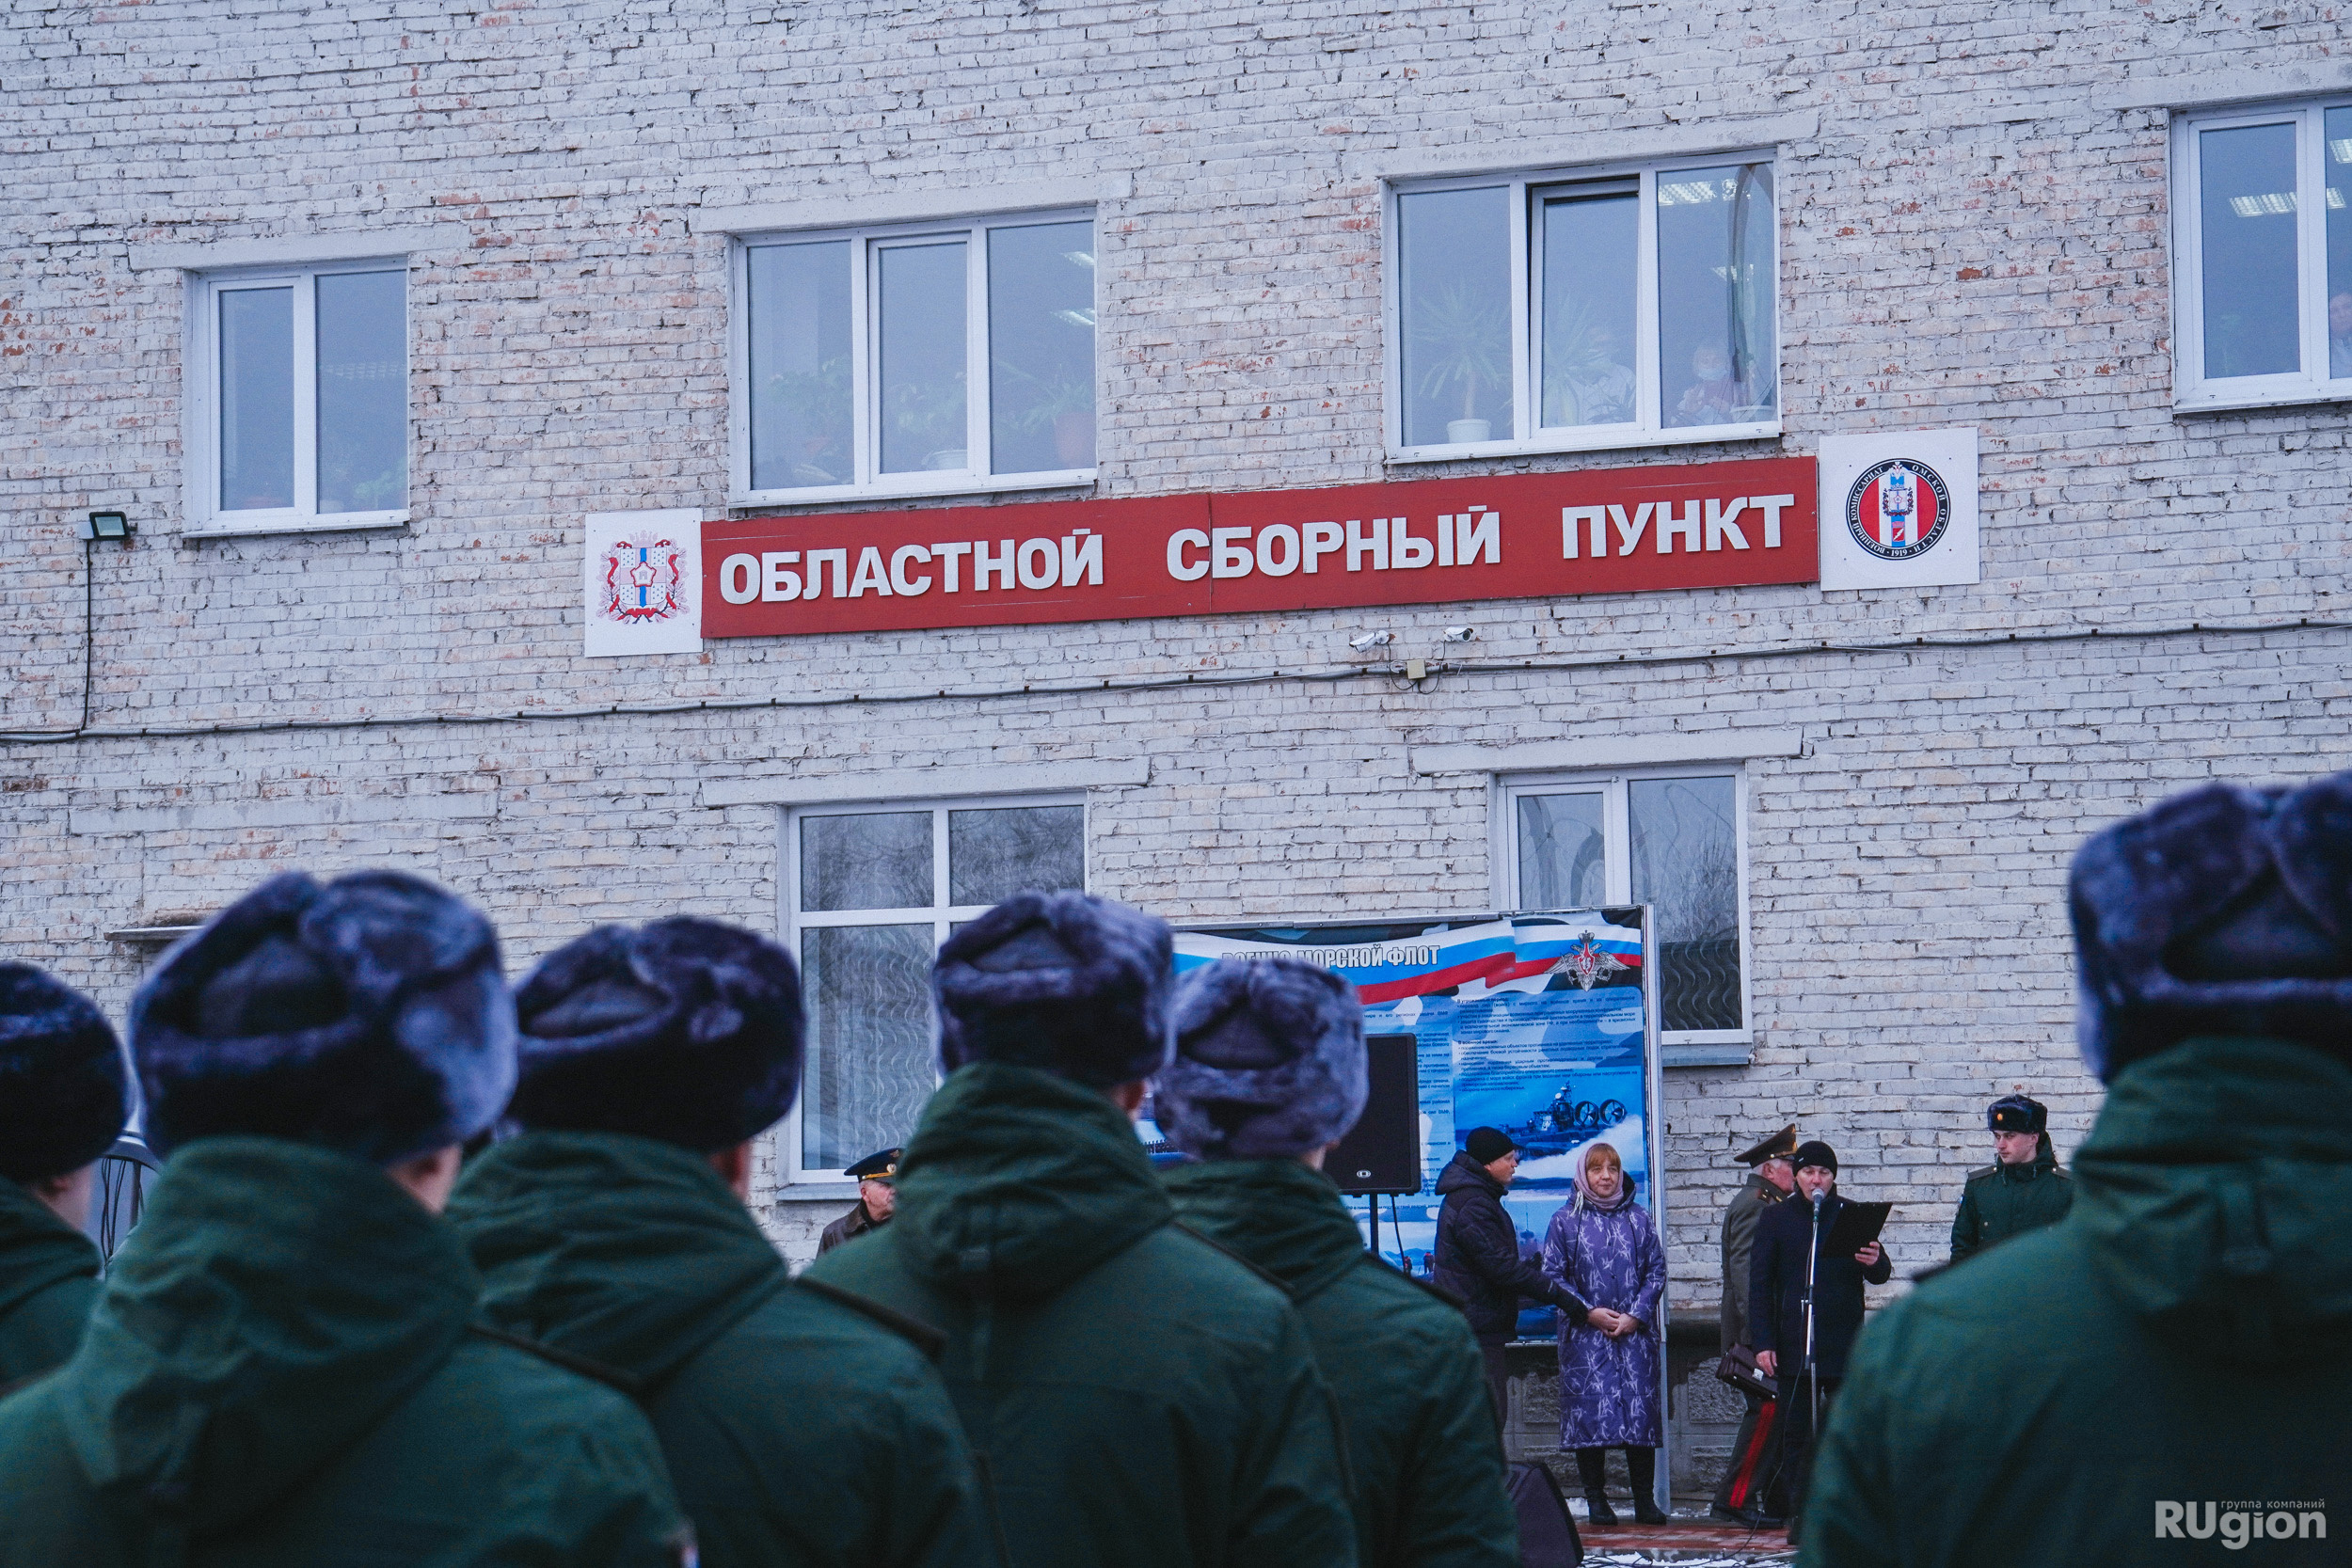 По словам спикера Госдумы Вячеслава Володина, в будущем «все социальные лифты, все кадровые решения» должны приниматься с учетом необходимости службы в Вооруженных силах